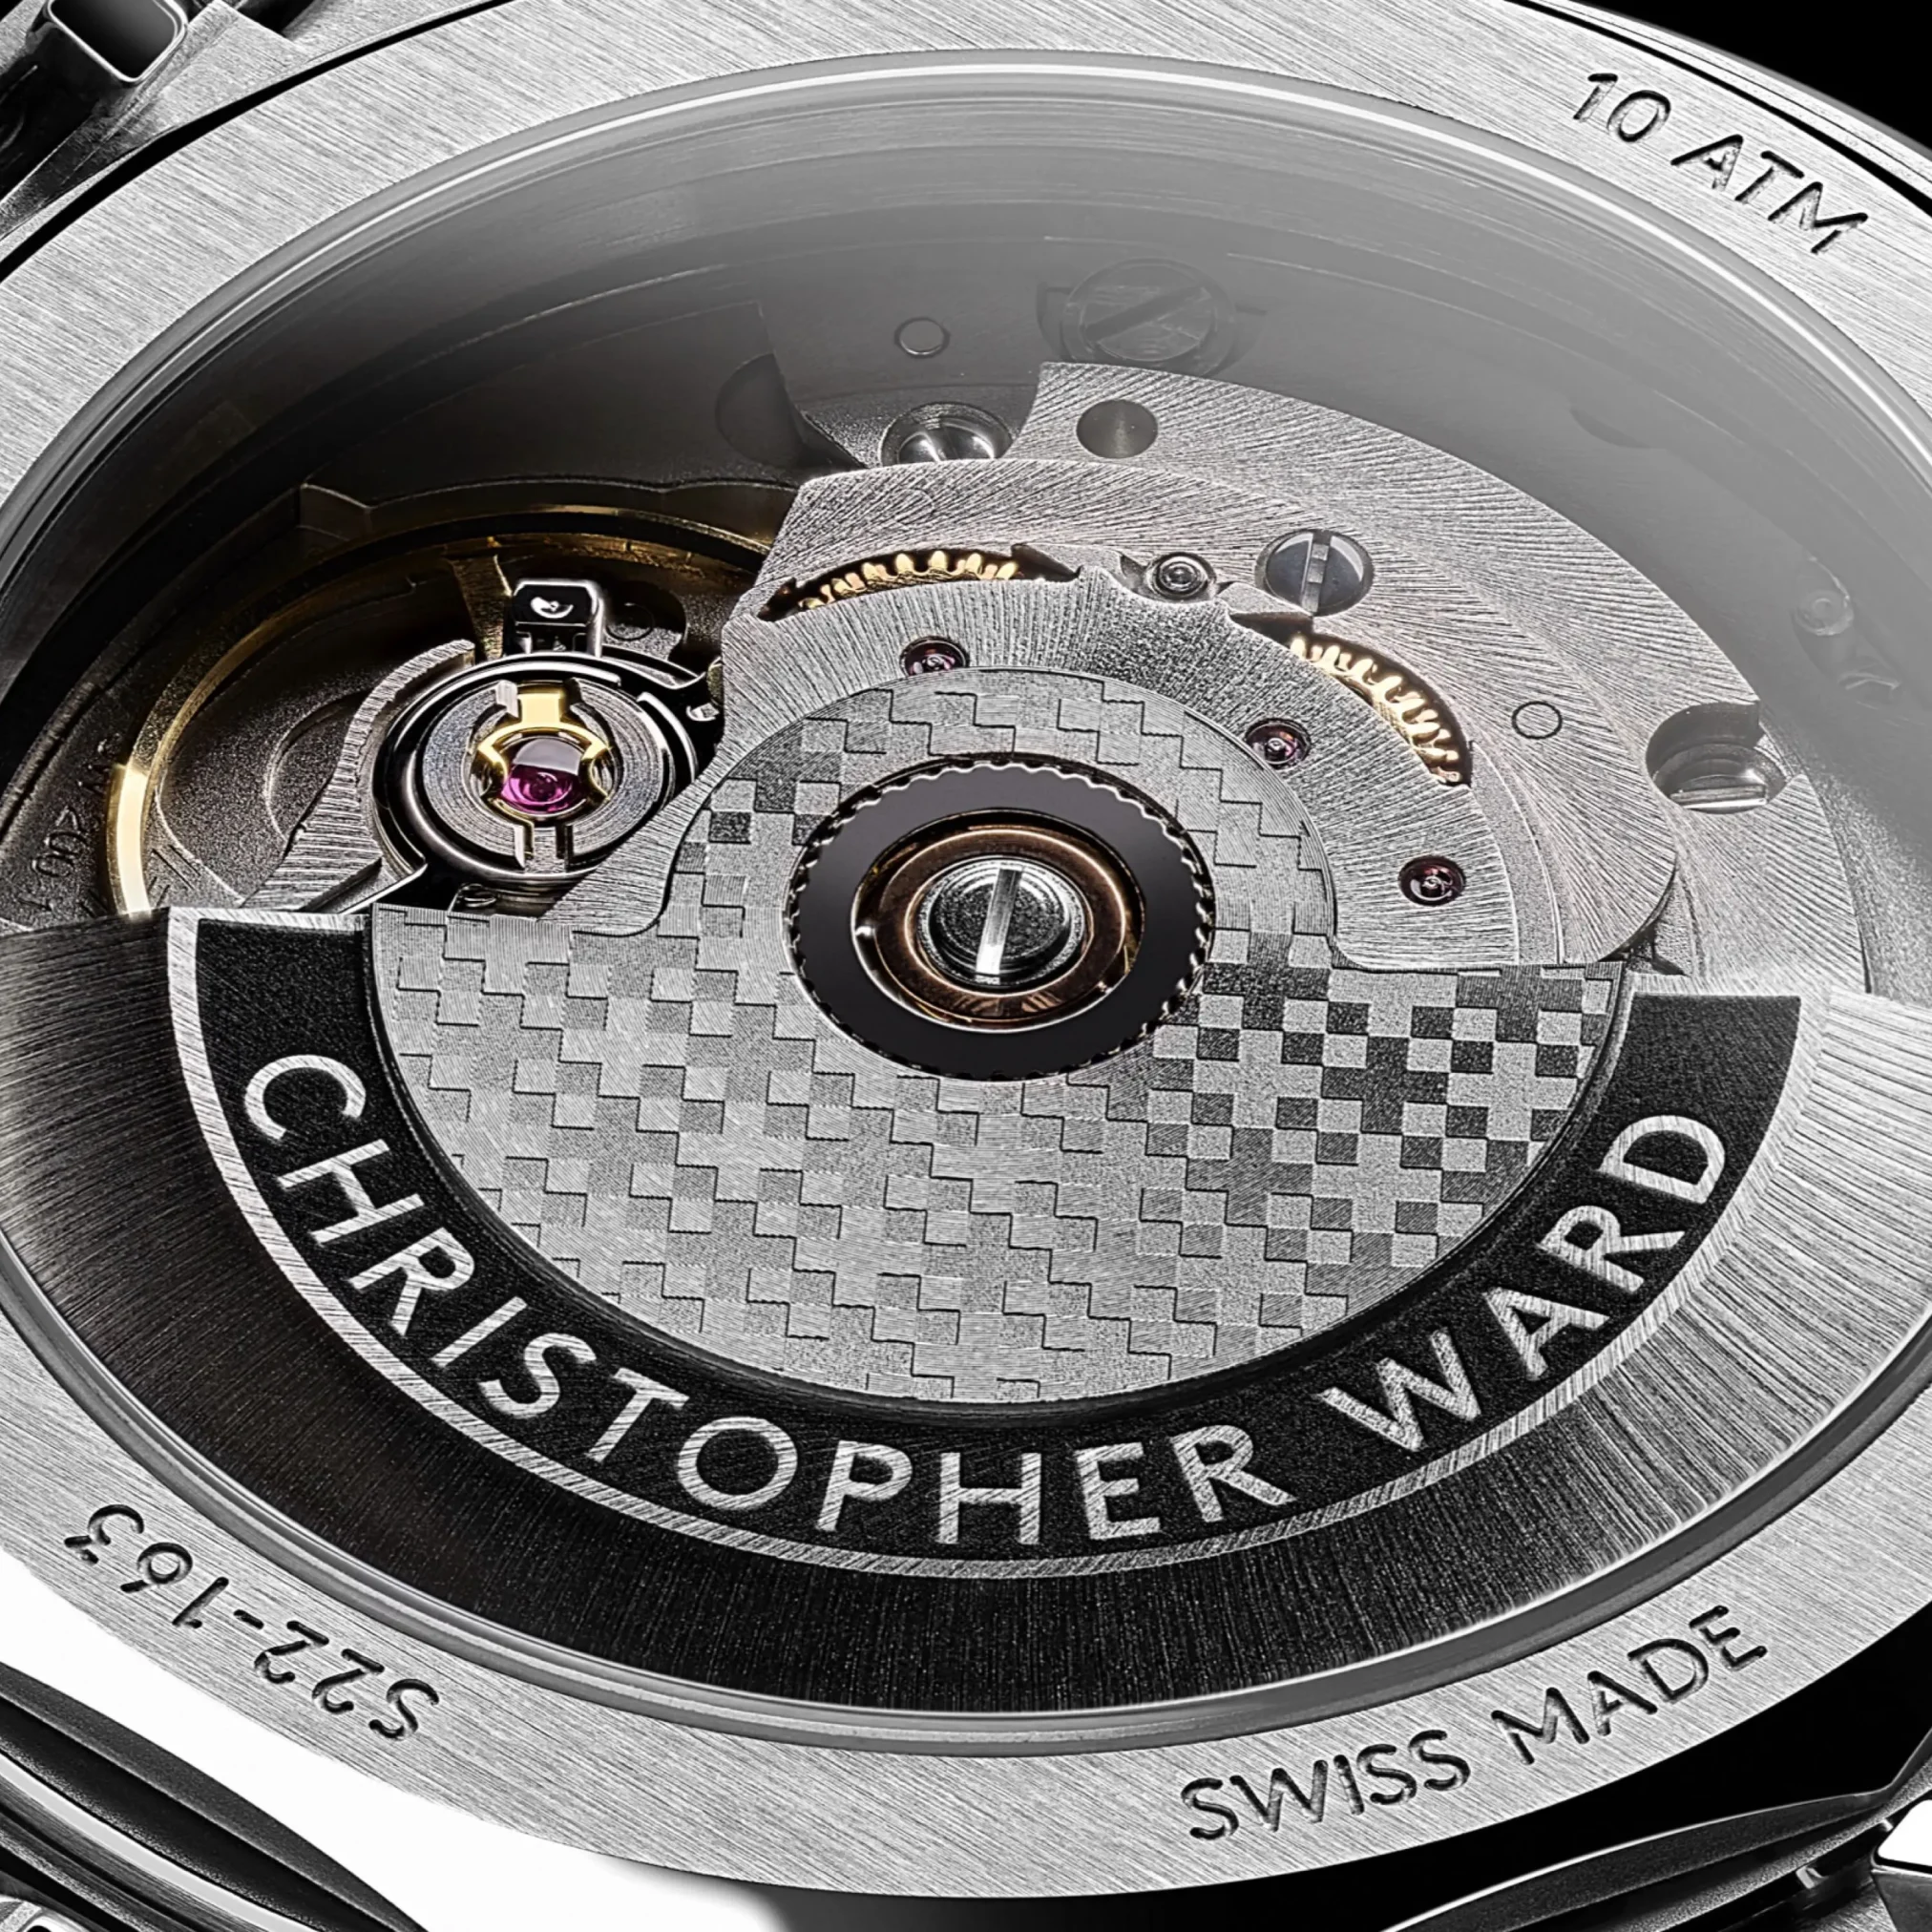 Đồng hồ Christopher Ward C12 The Twelve 36 Halo C12-36A2H1-S0AK0-B0 mặt số màu đen. Thiết kế lộ cơ. Dây đeo bằng thép. Thân vỏ bằng thép.